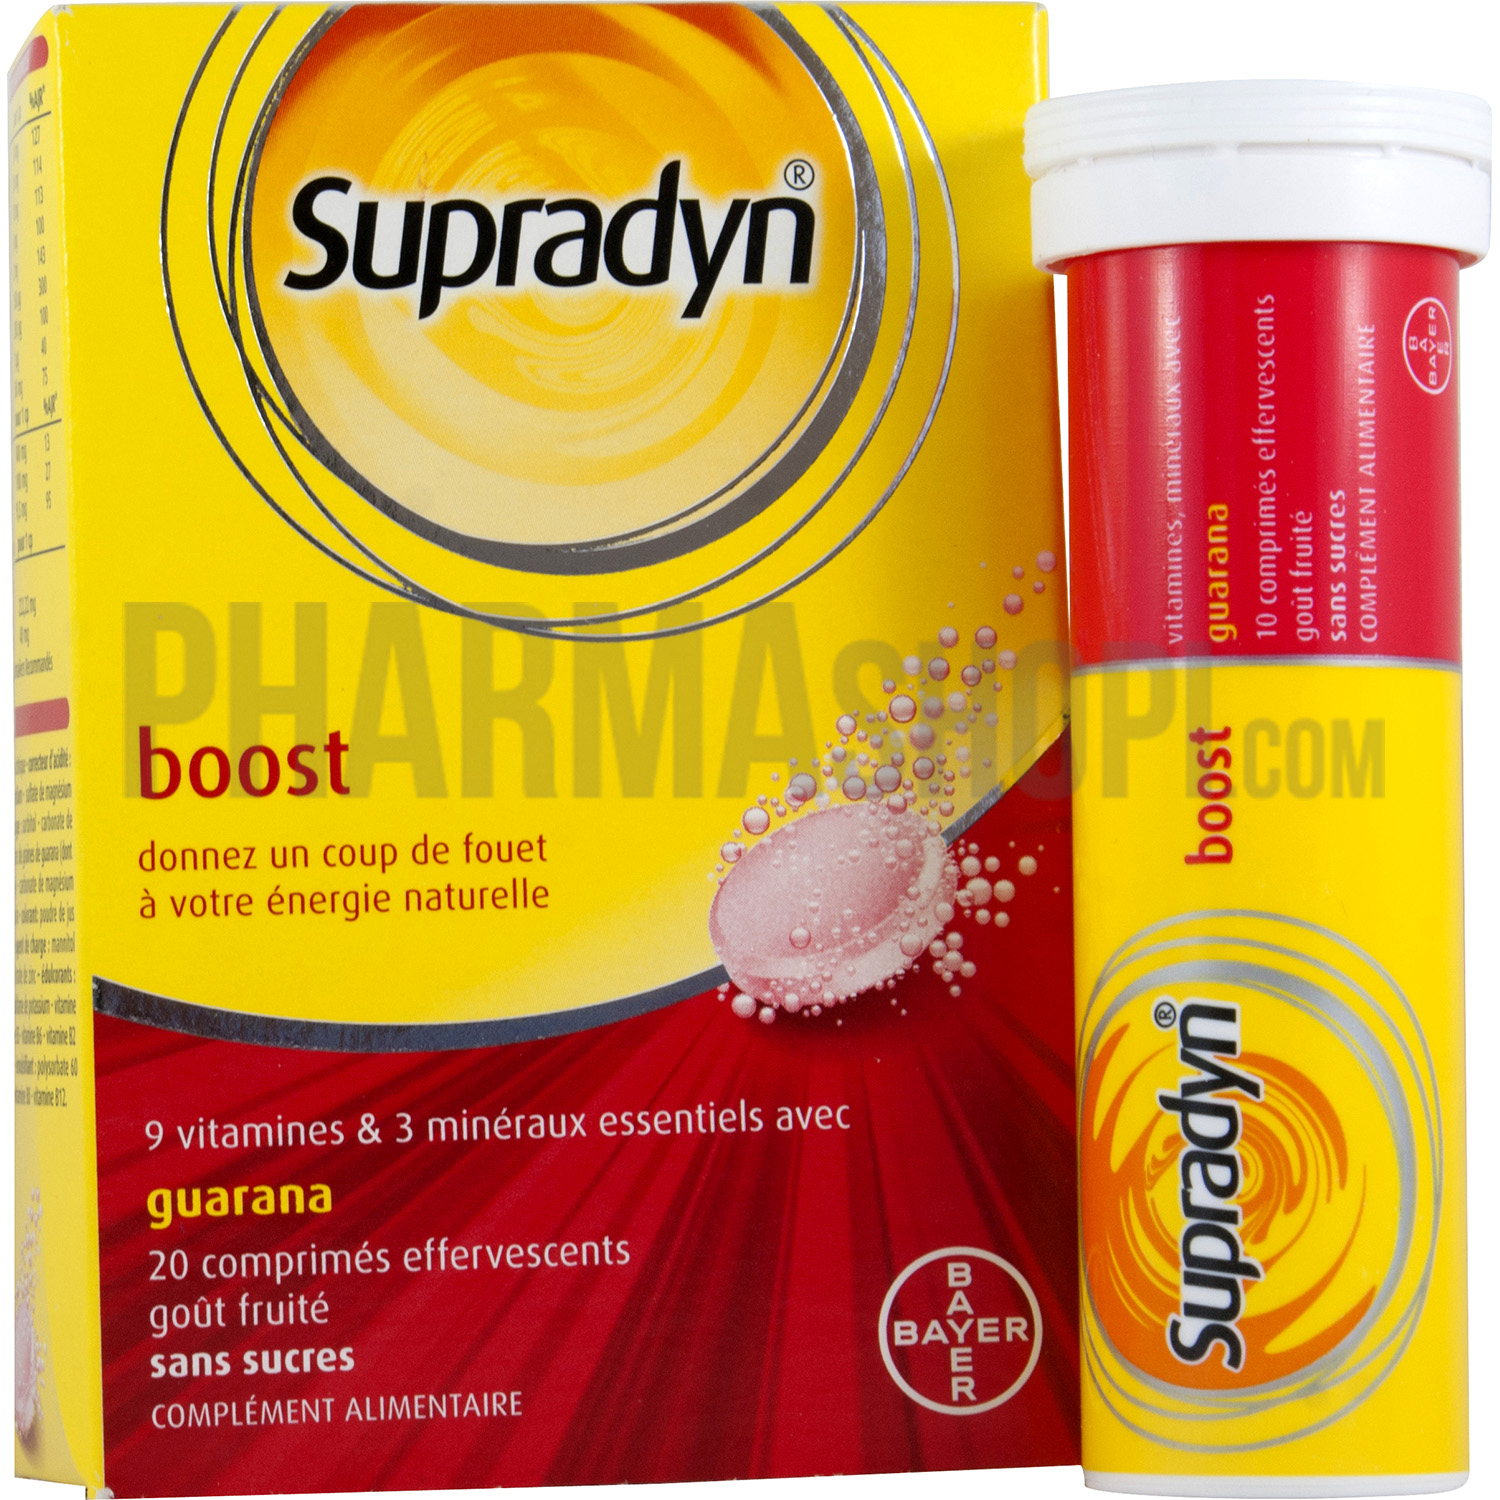 supradyn segít a fogyásban